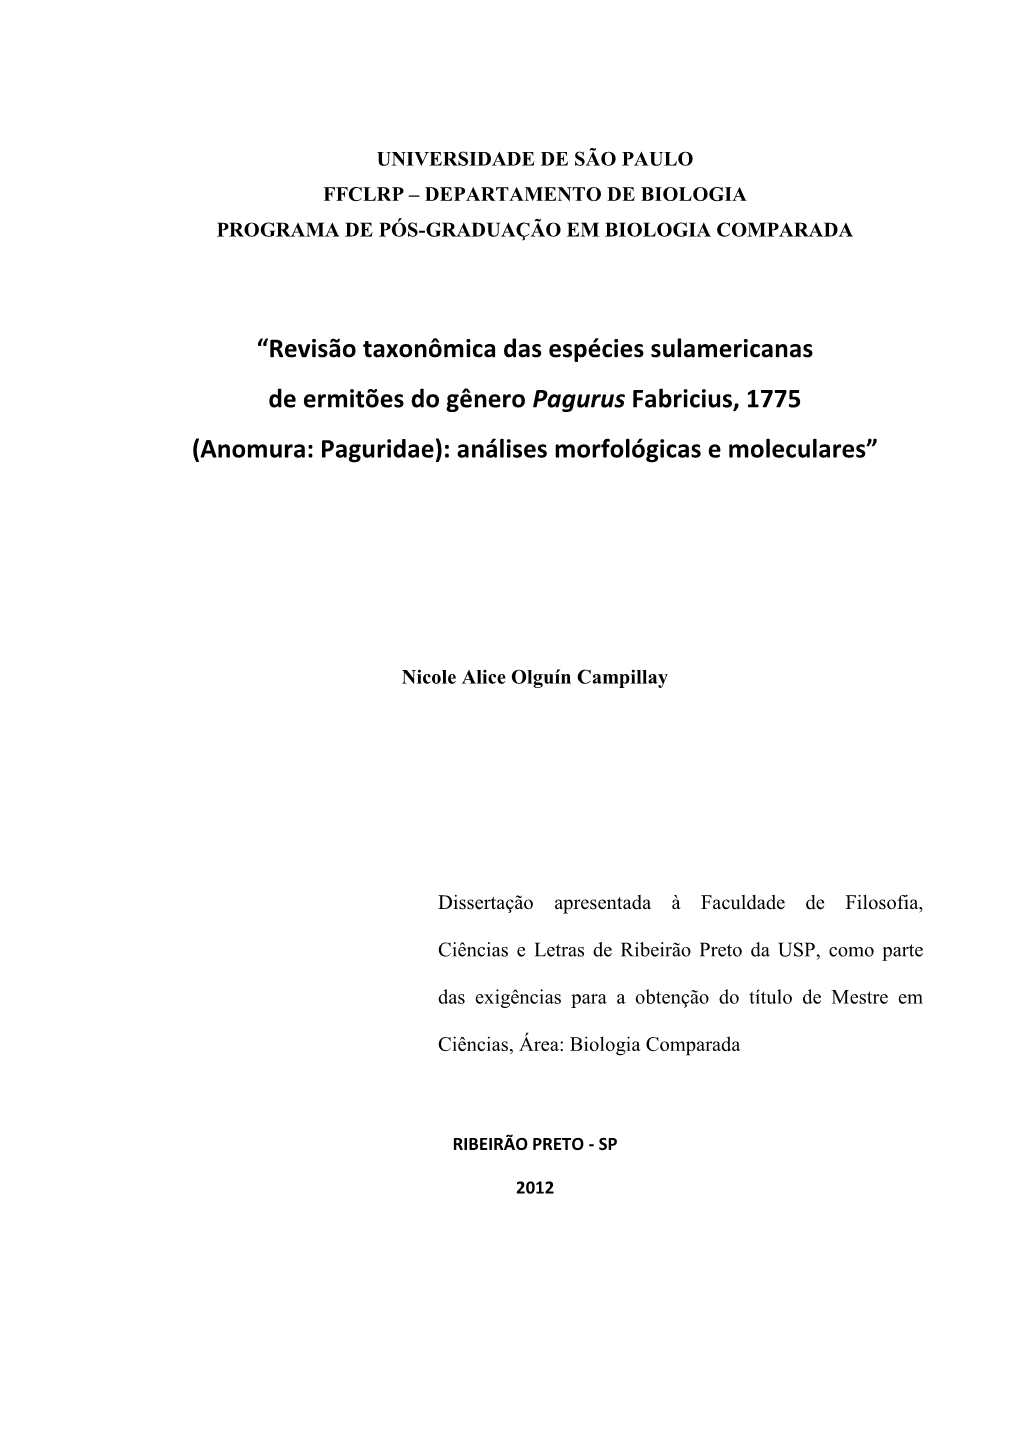 Revisão Taxonômica Das Espécies Sulamericanas De Ermitões Do Gênero Pagurus Fabricius, 1775 (Anomura: Paguridae): Análises Morfológicas E Moleculares”